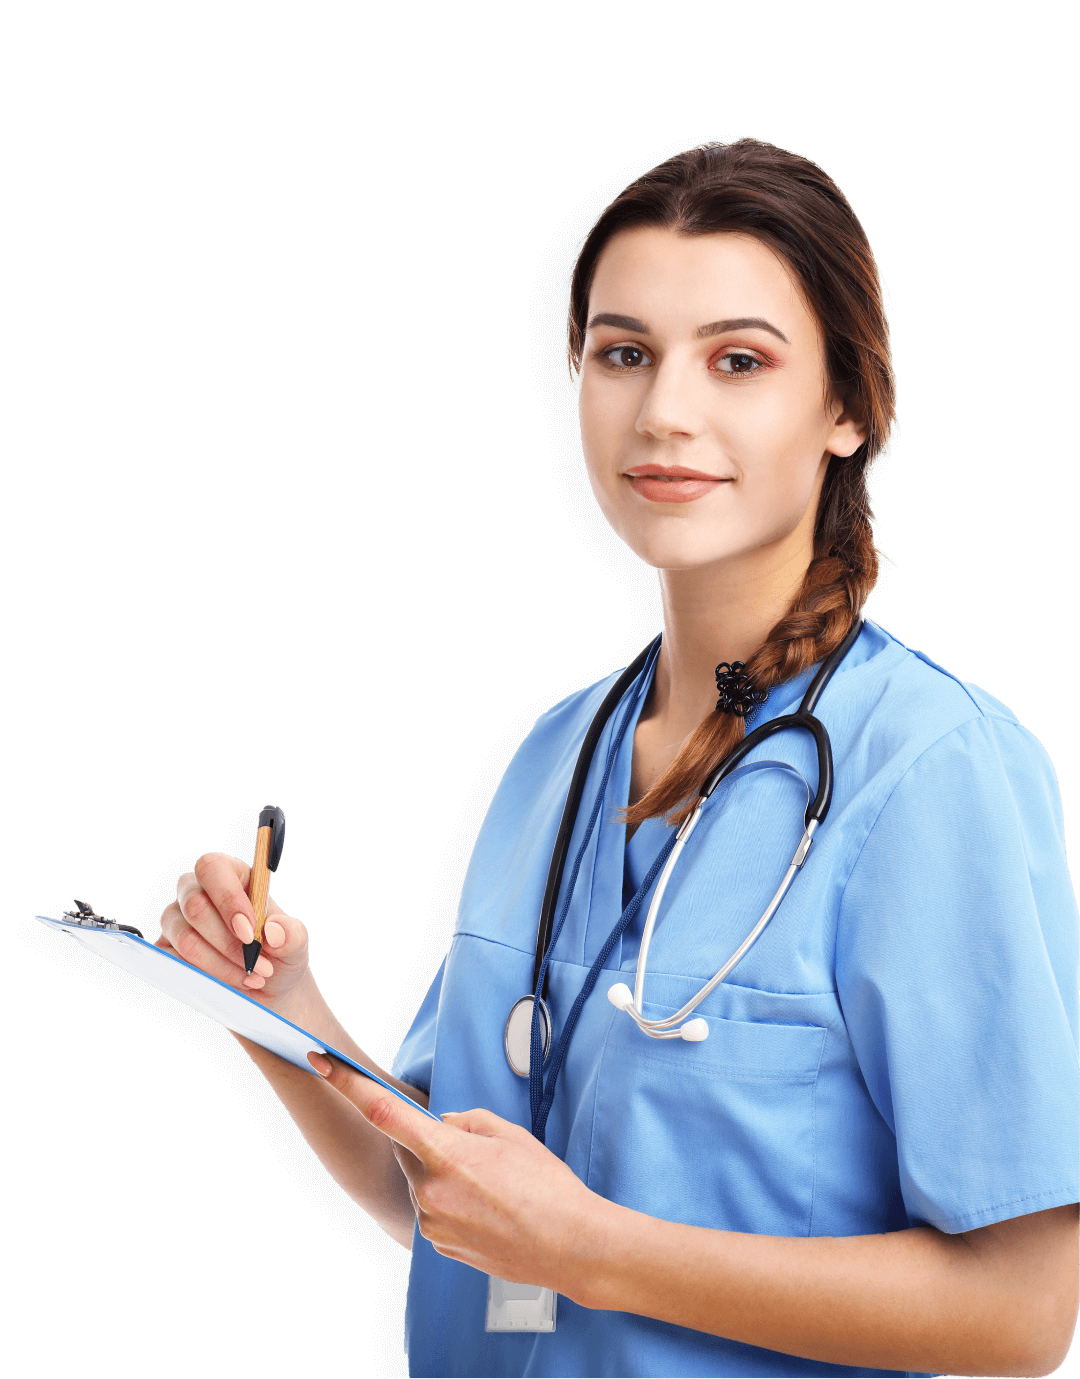 Nurse-Infusion (CRNI) professional